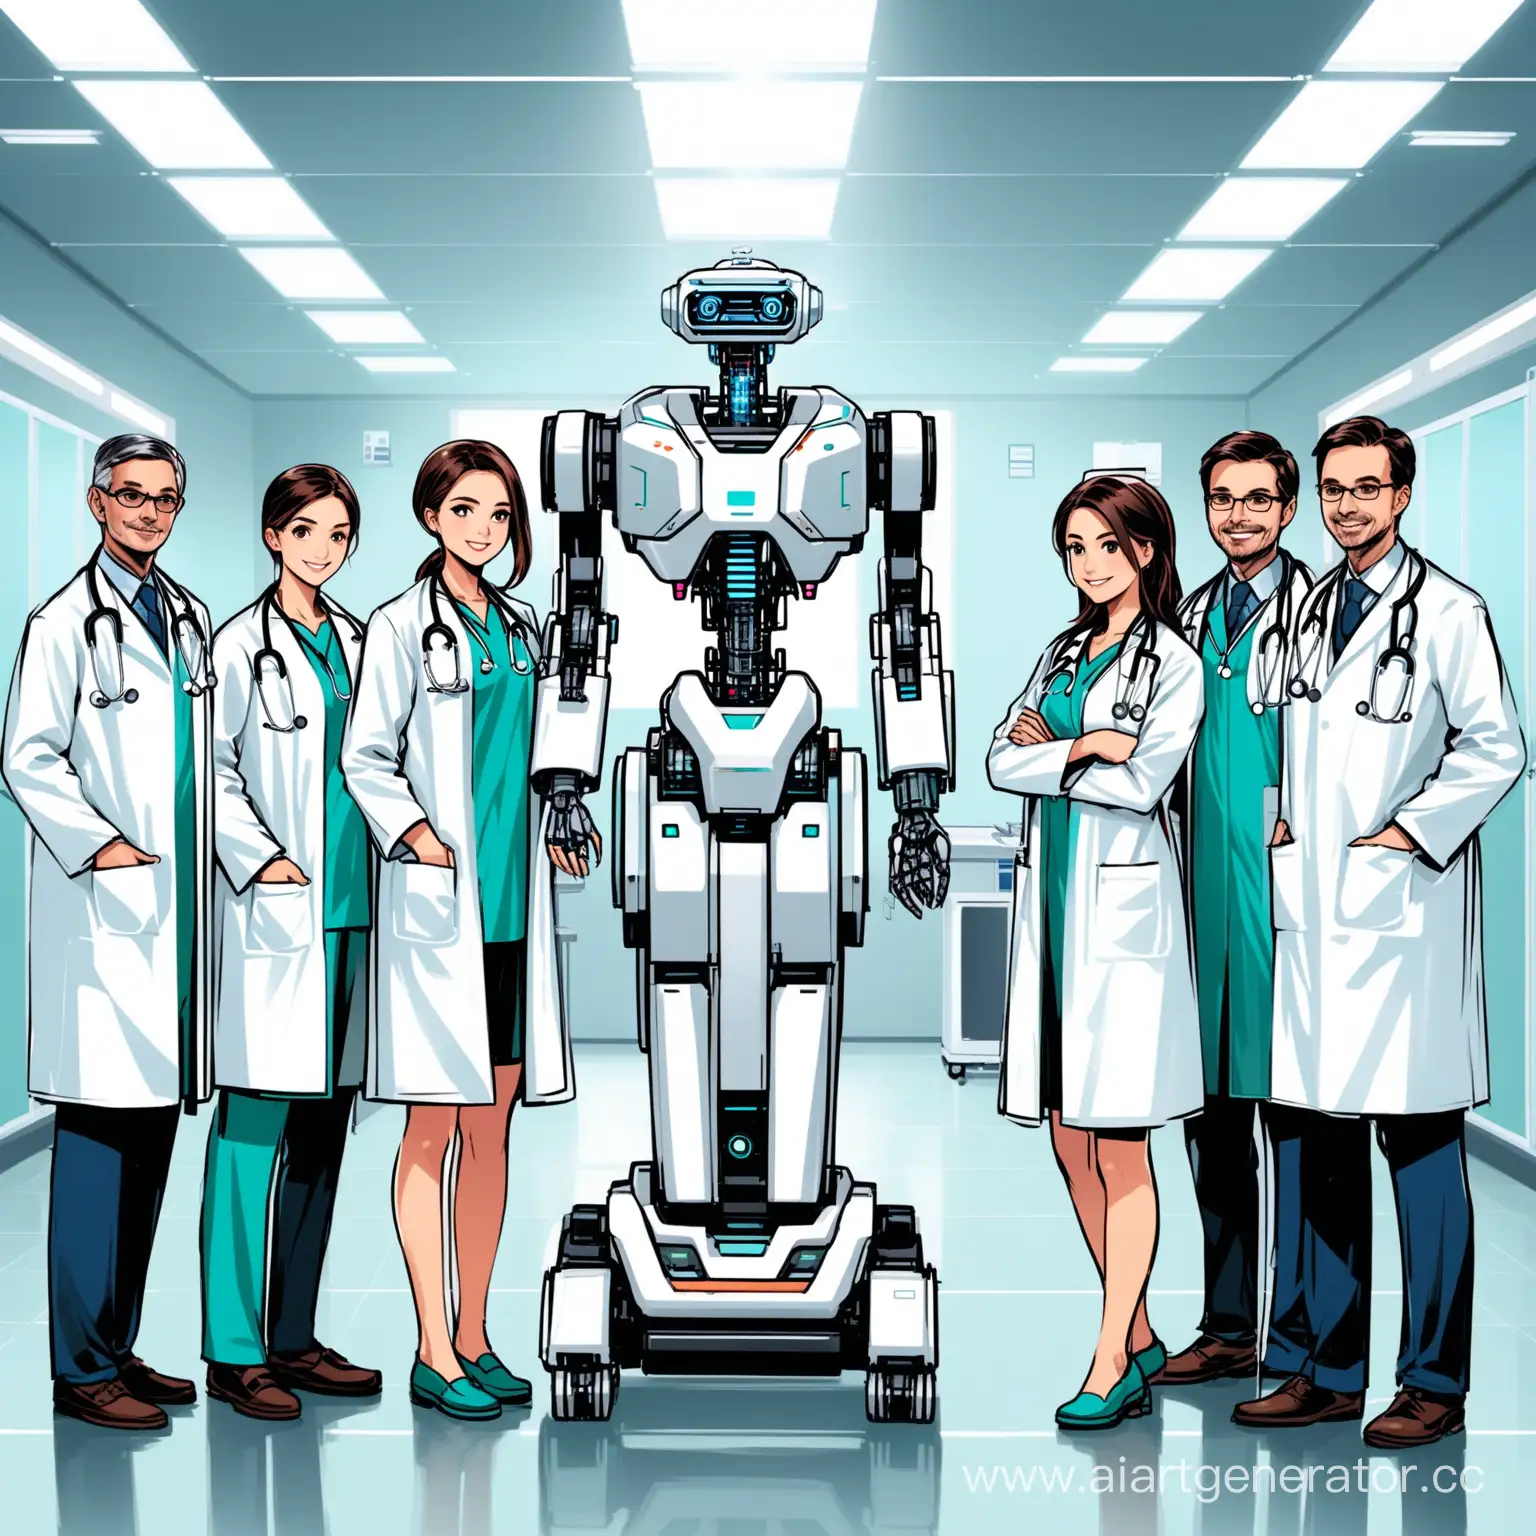 команда врачей вместе с медицинским роботом
